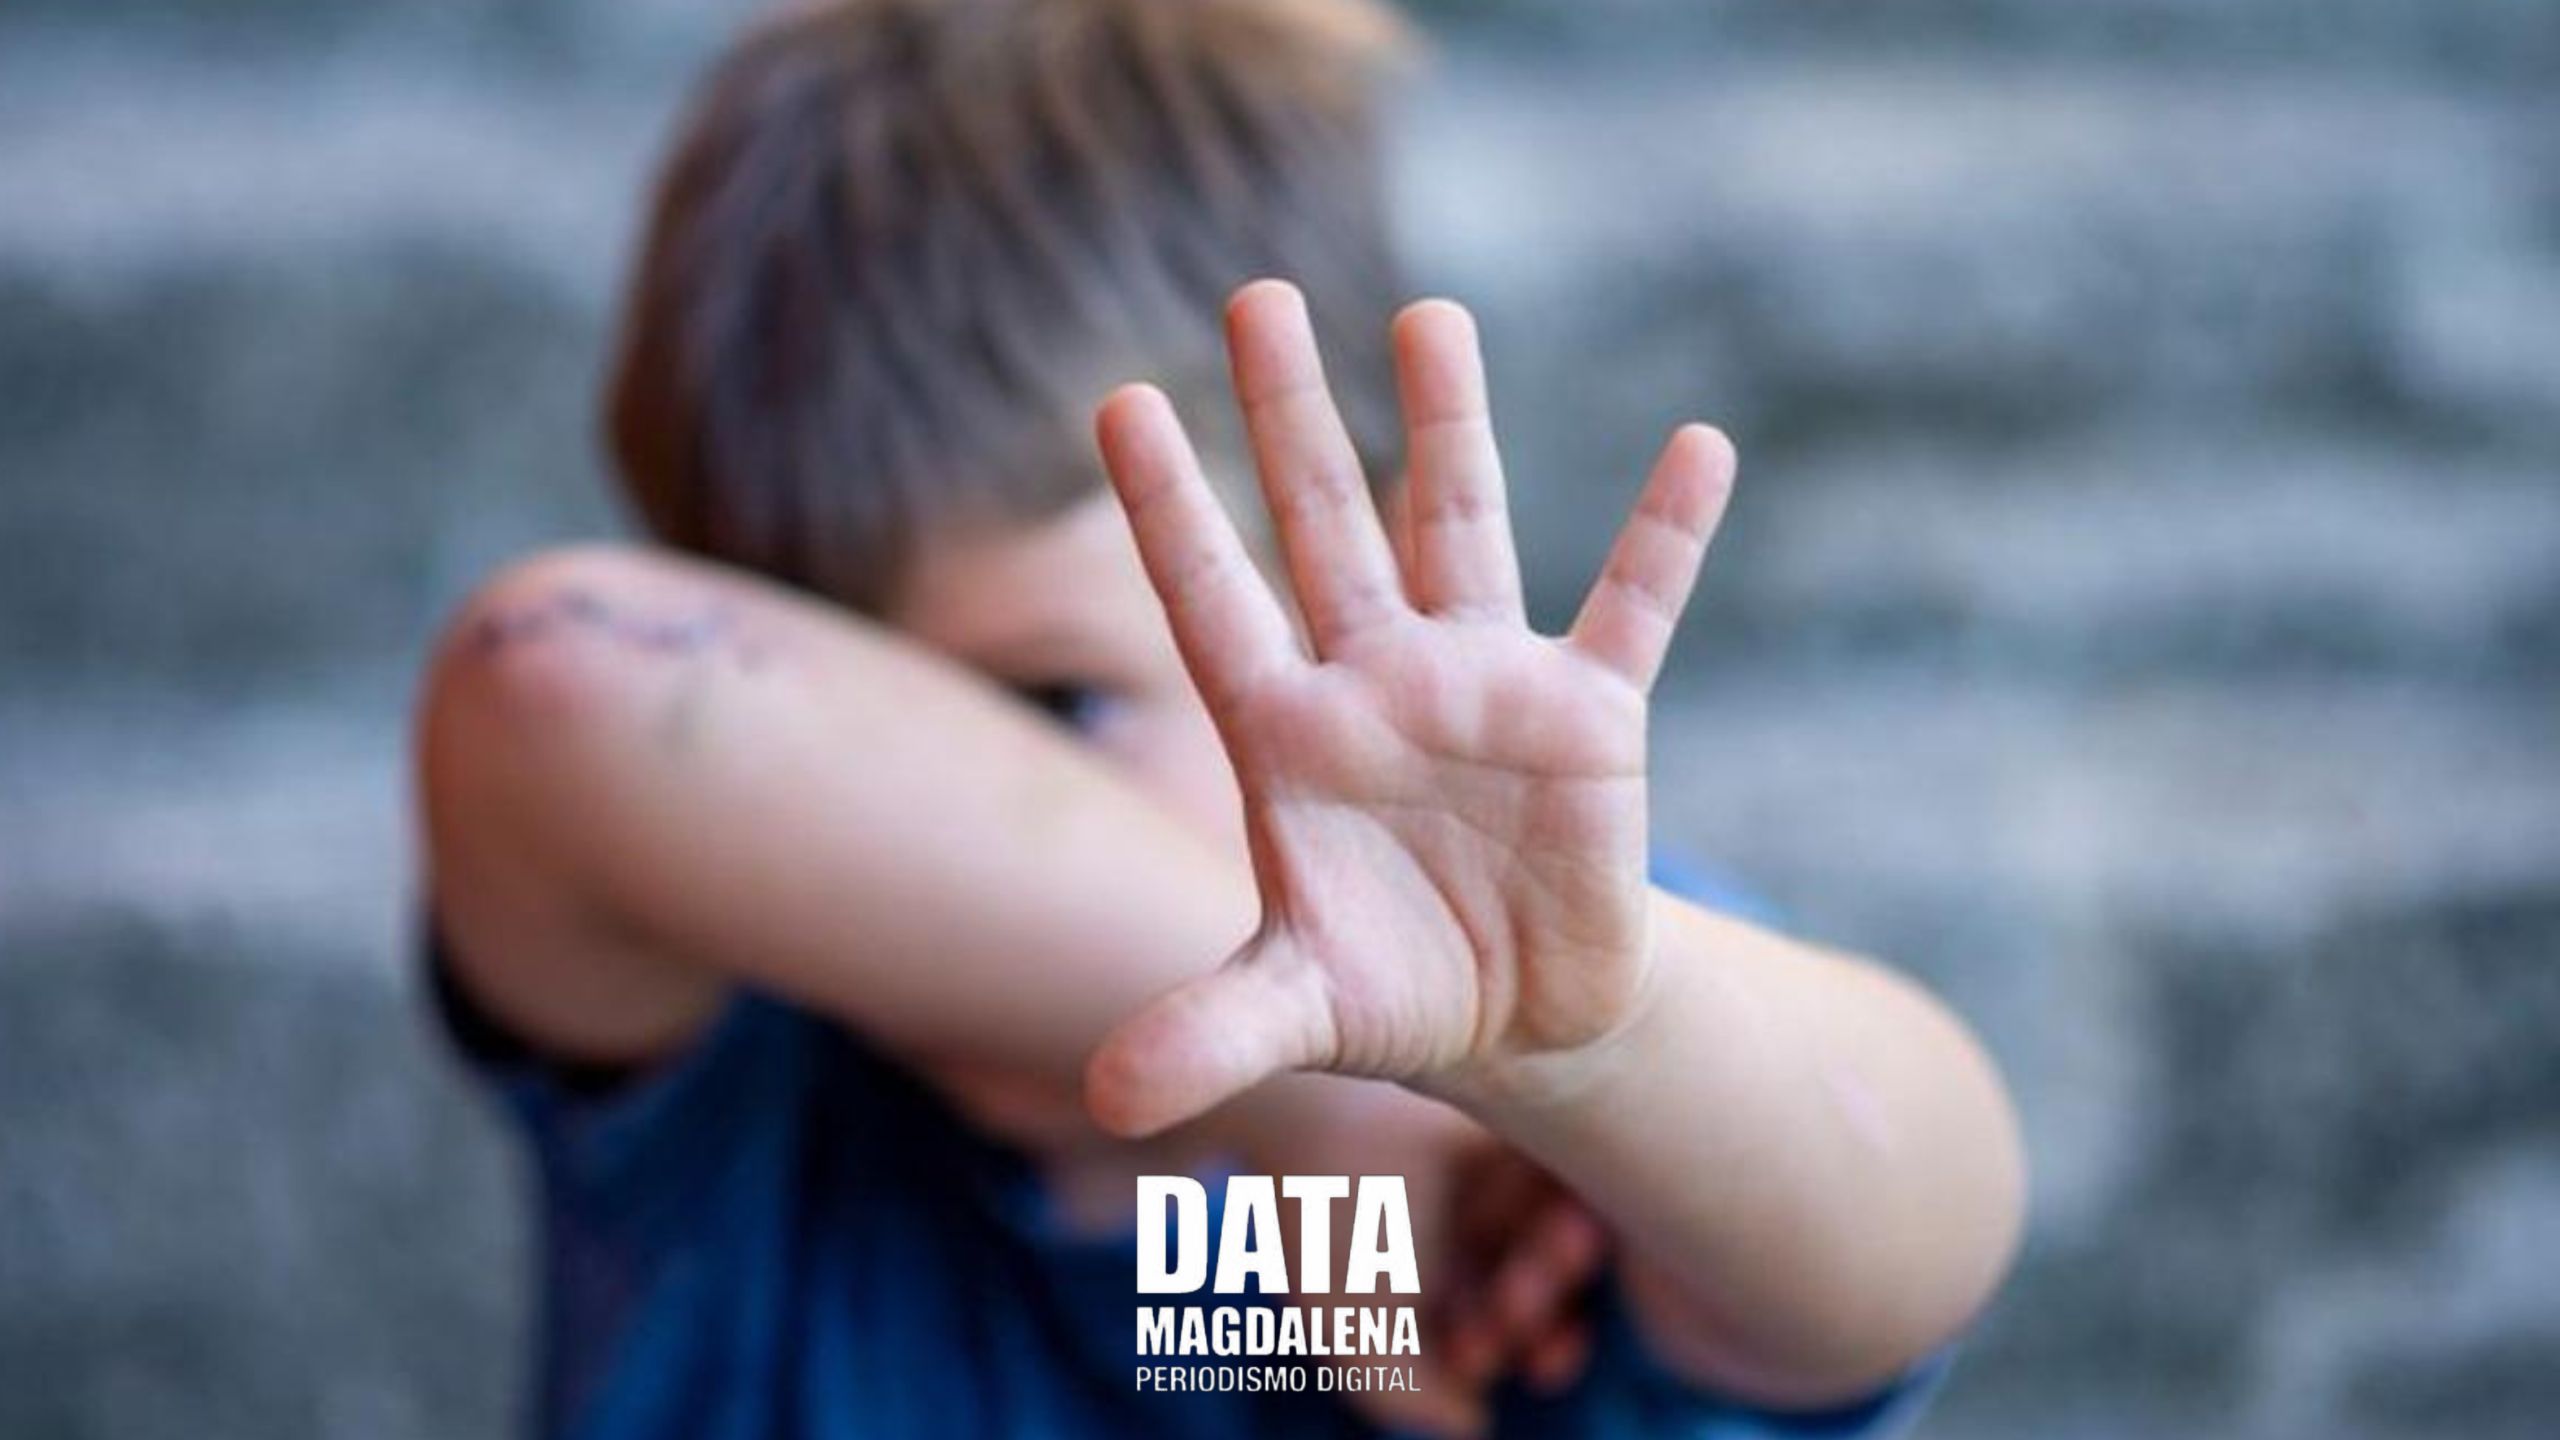 ????Día Internacional de Lucha contra el Maltrato Infantil: Preocupantes datos en Argentina